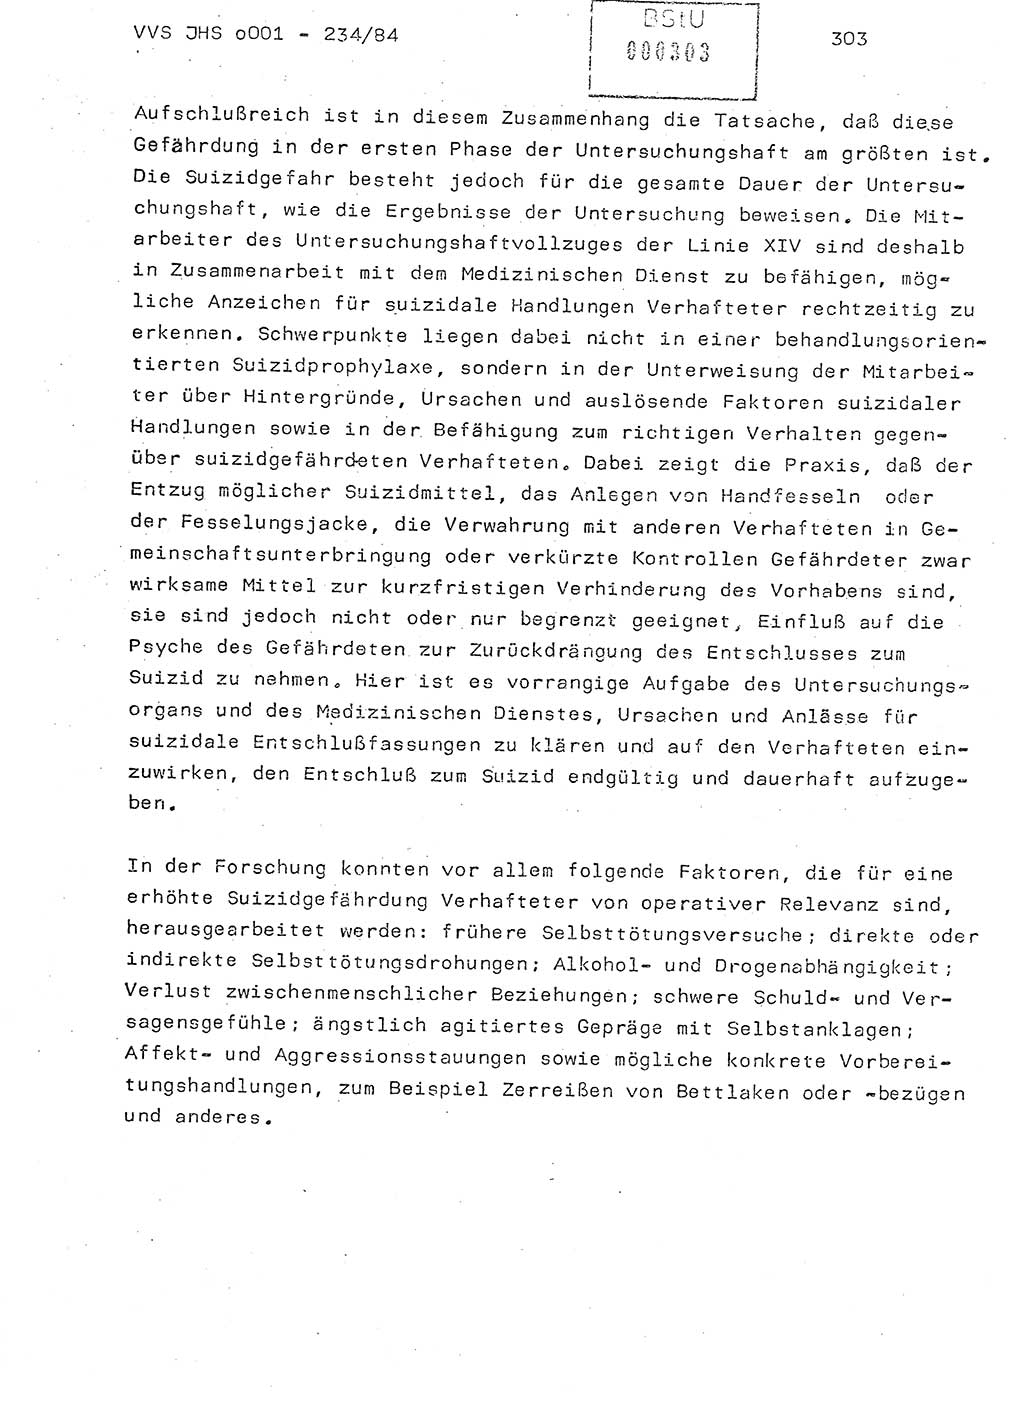 Dissertation Oberst Siegfried Rataizick (Abt. ⅩⅣ), Oberstleutnant Volkmar Heinz (Abt. ⅩⅣ), Oberstleutnant Werner Stein (HA Ⅸ), Hauptmann Heinz Conrad (JHS), Ministerium für Staatssicherheit (MfS) [Deutsche Demokratische Republik (DDR)], Juristische Hochschule (JHS), Vertrauliche Verschlußsache (VVS) o001-234/84, Potsdam 1984, Seite 303 (Diss. MfS DDR JHS VVS o001-234/84 1984, S. 303)